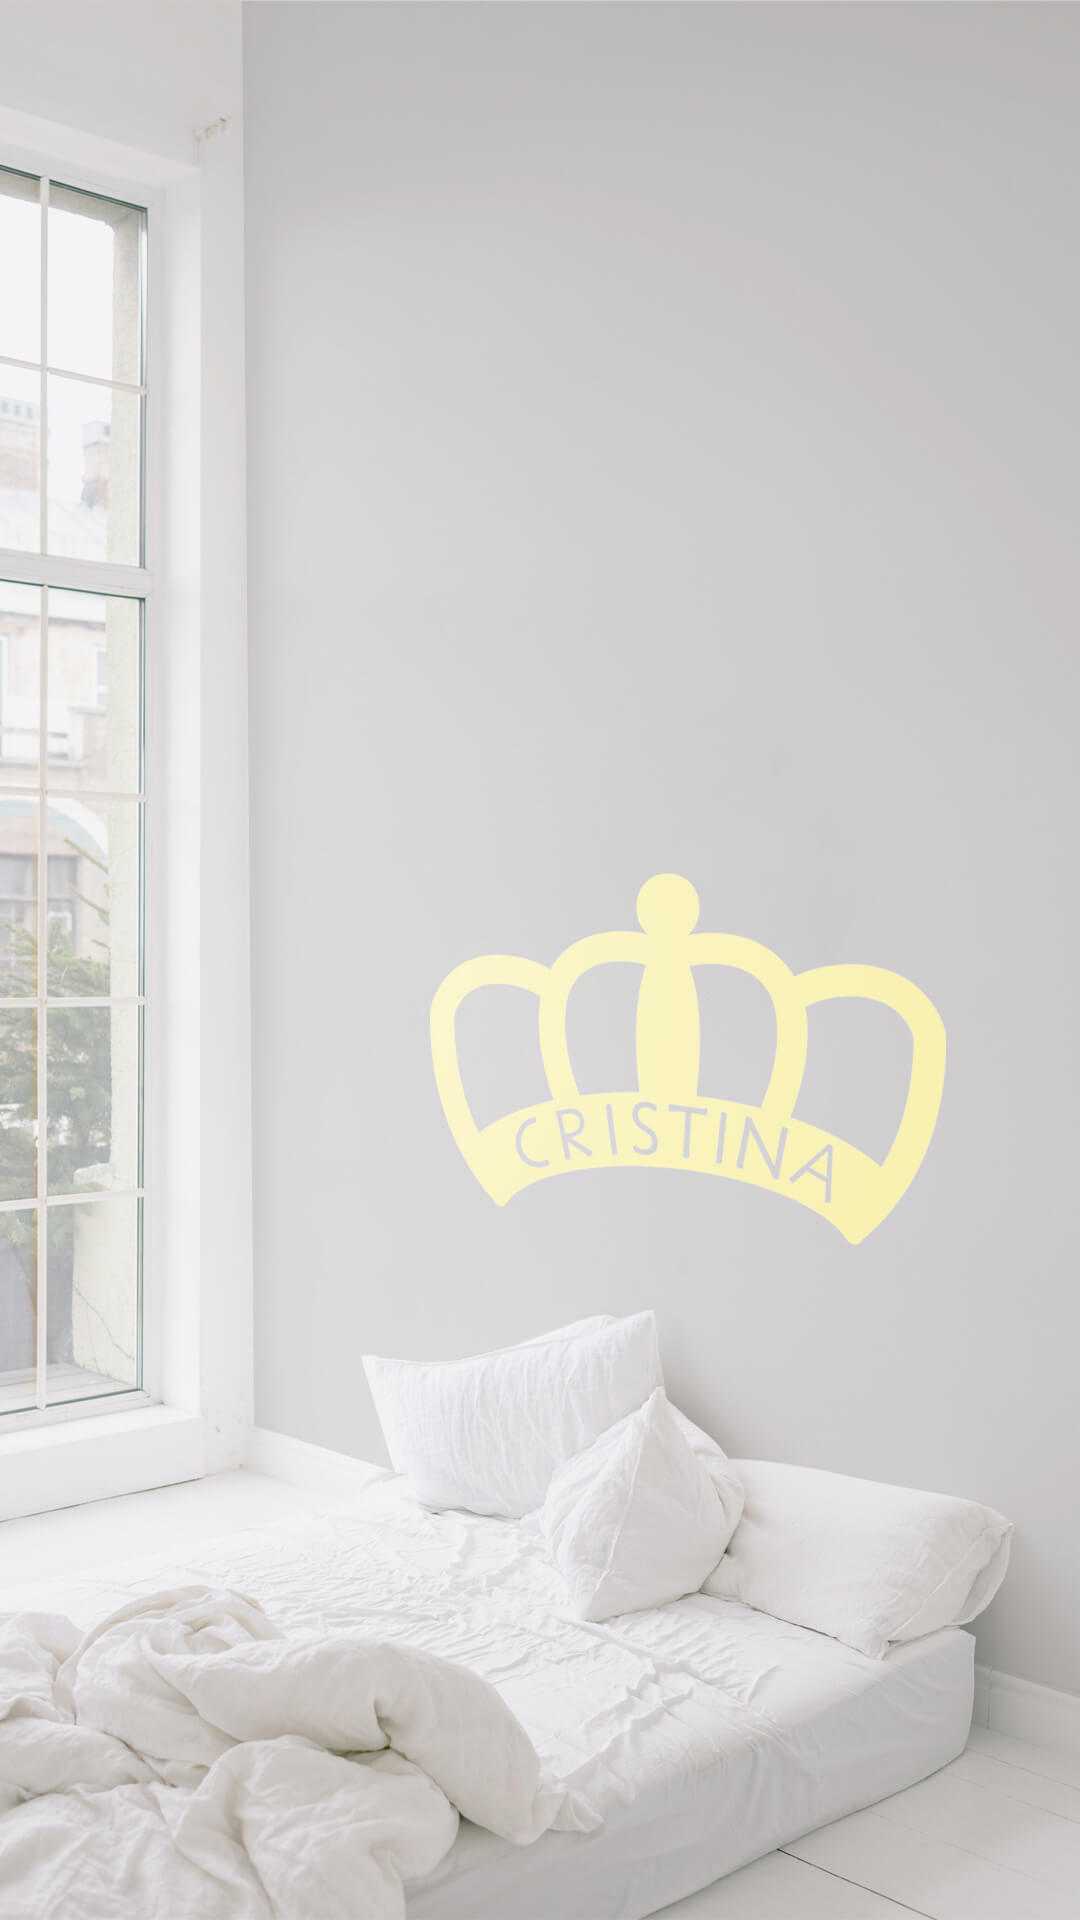 Queen Crown Sticker big